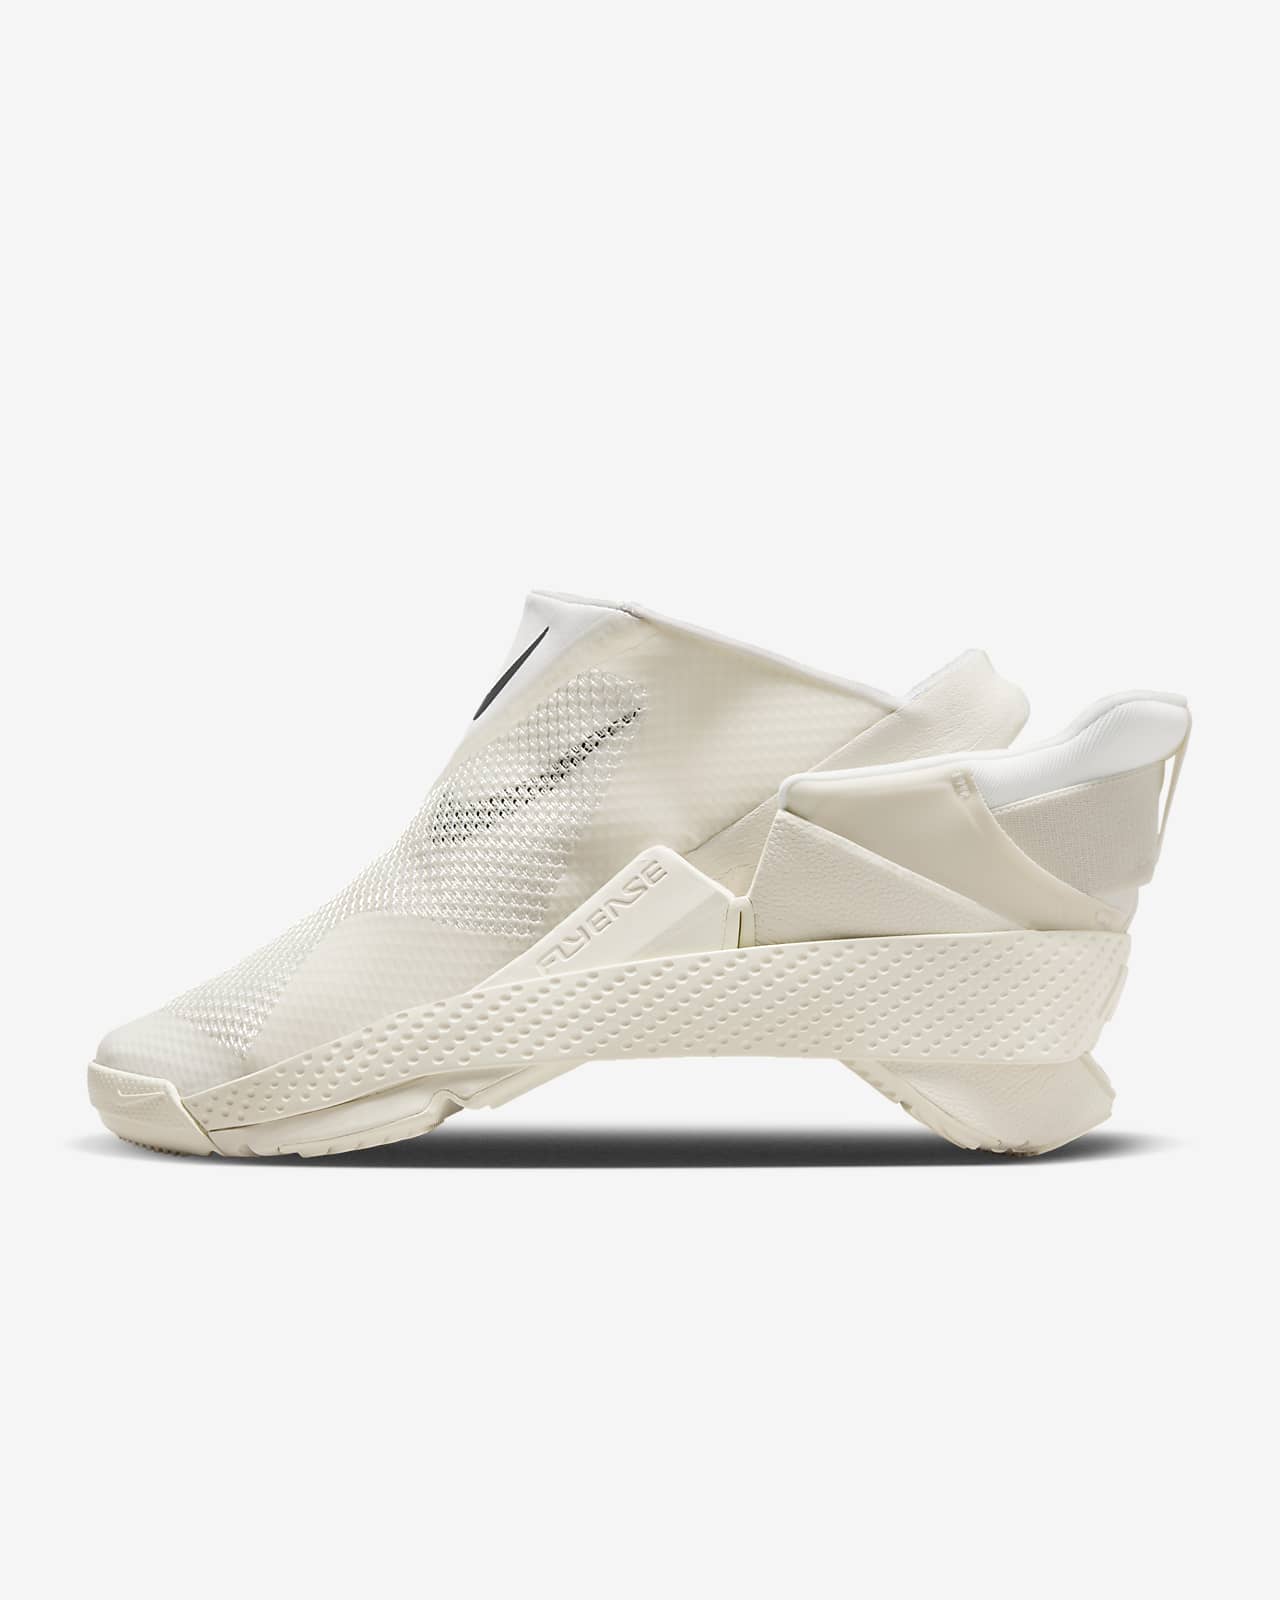 Nike Go FlyEase Kolayca Giyilip Çıkarılabilen Ayakkabı